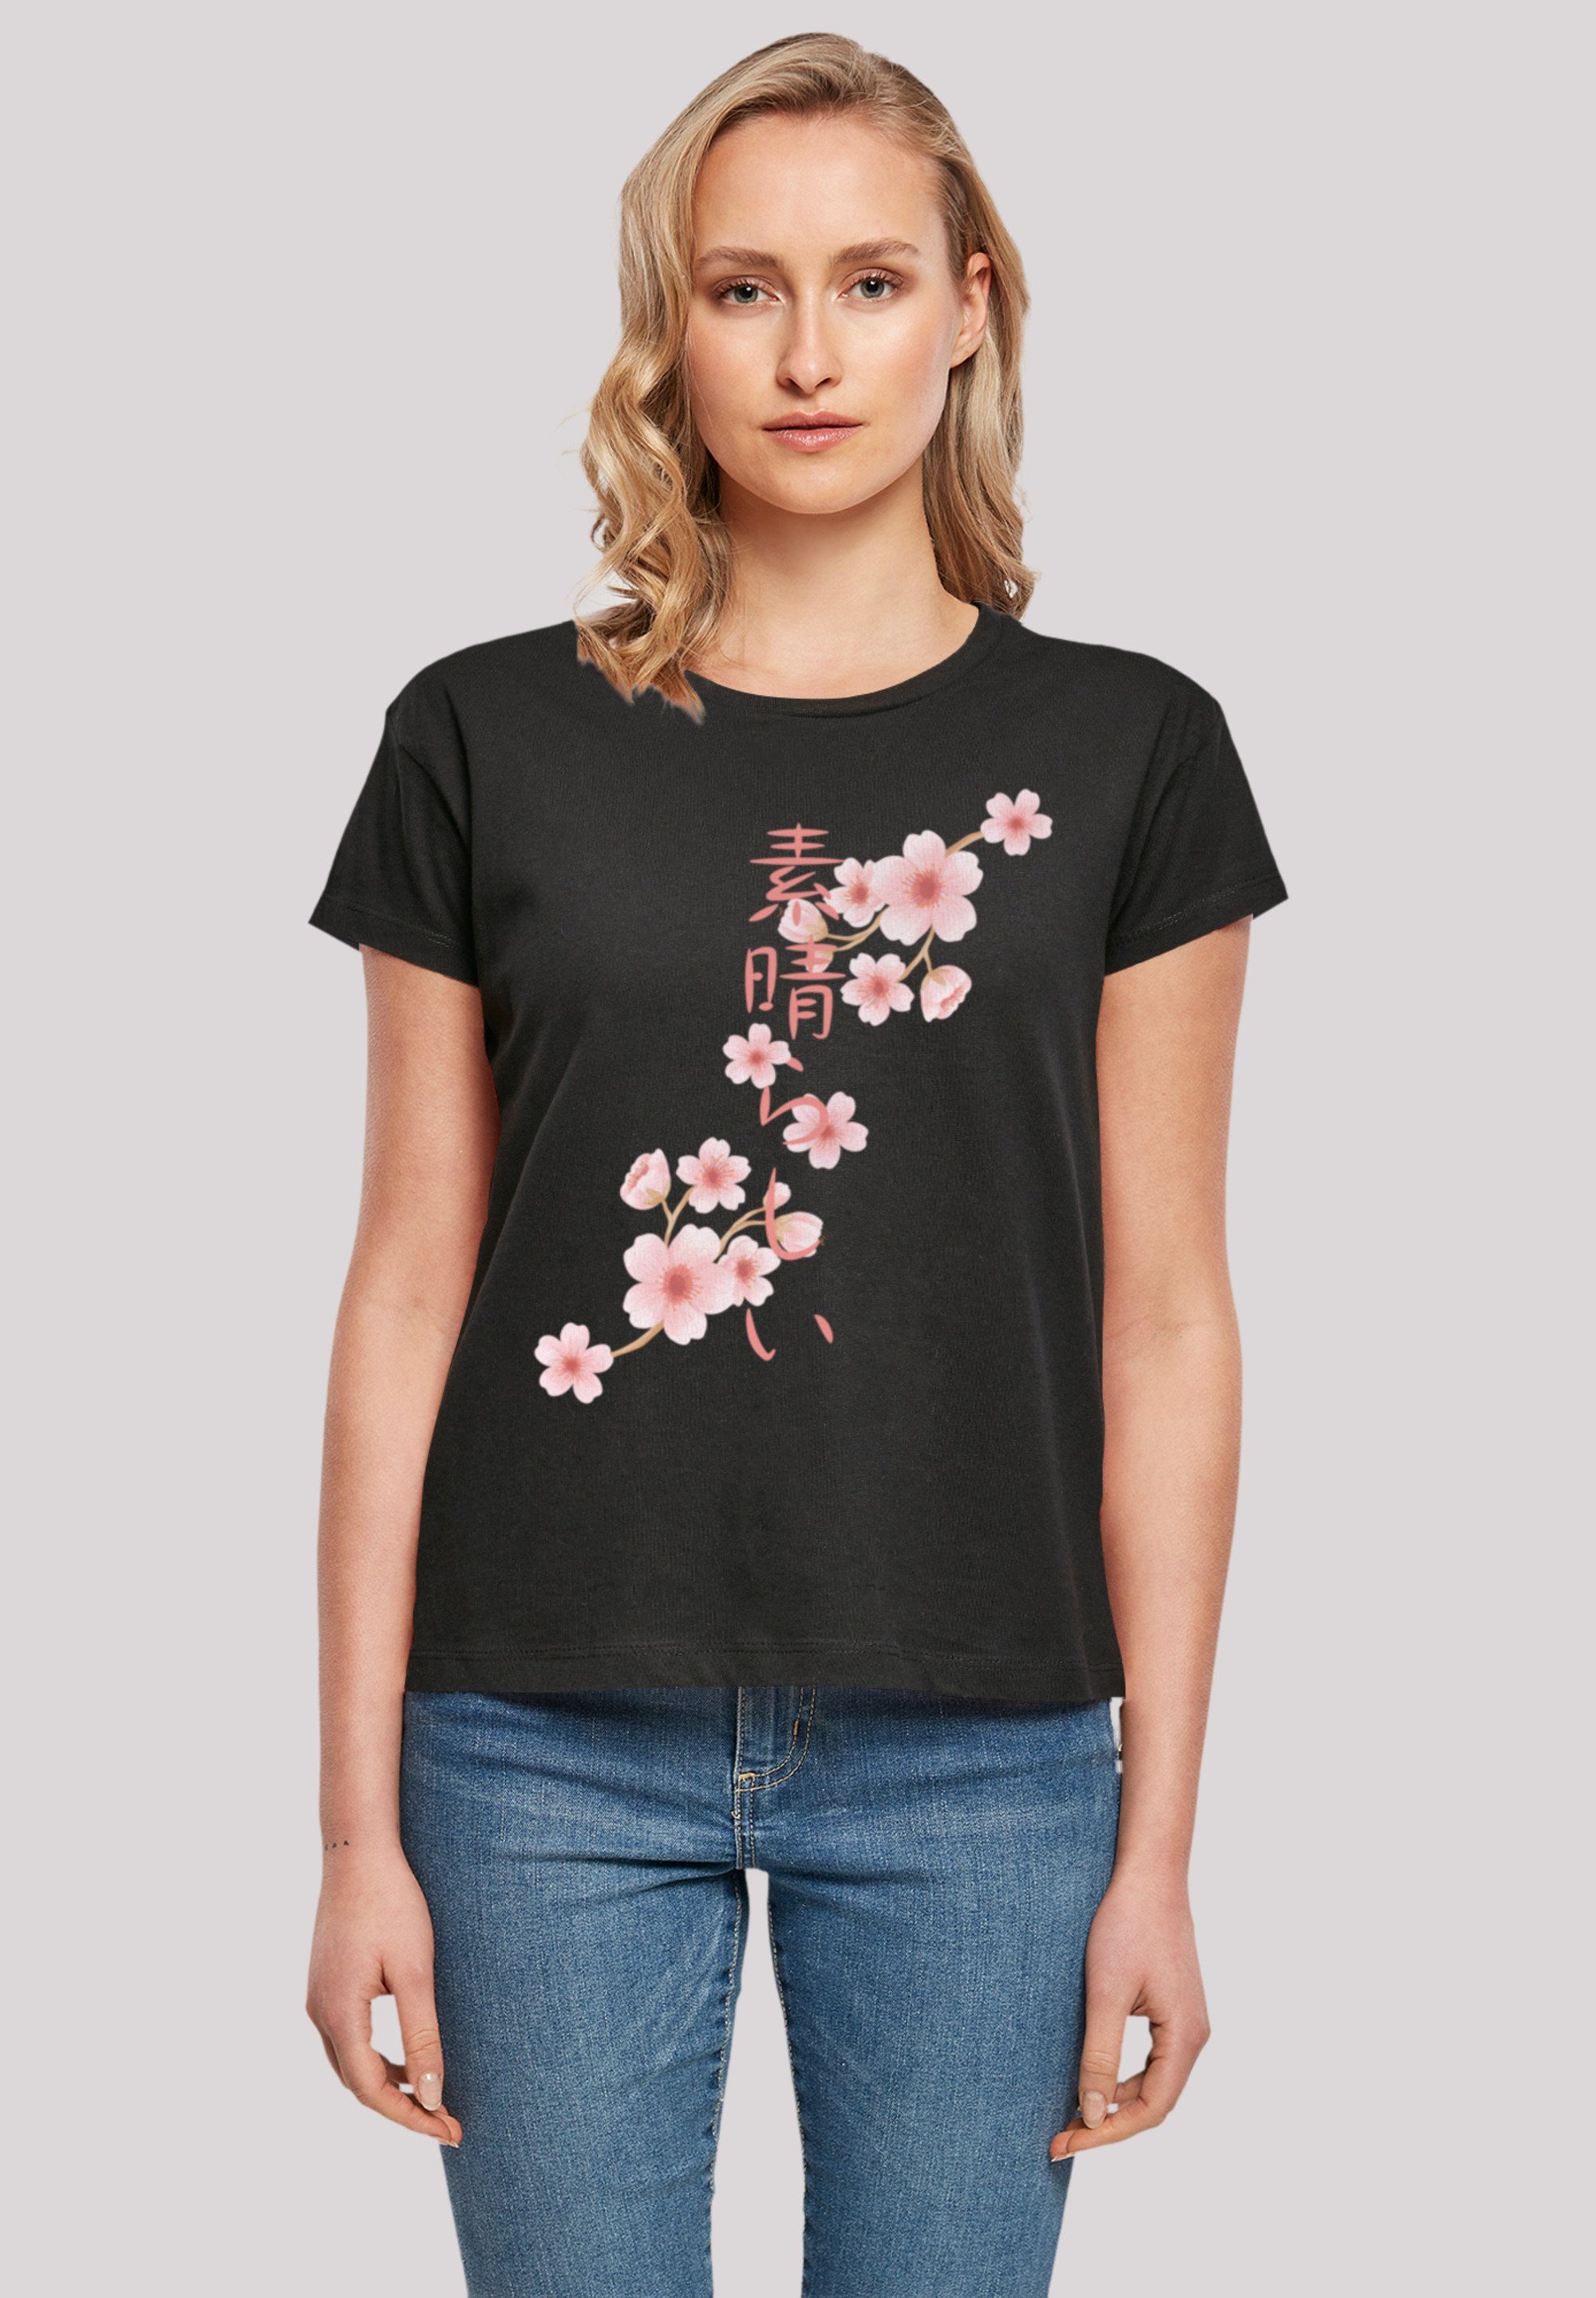 F4NT4STIC T-Shirt Kirschblüten Print, Fällt weit aus, bitte eine Größe  kleiner bestellen